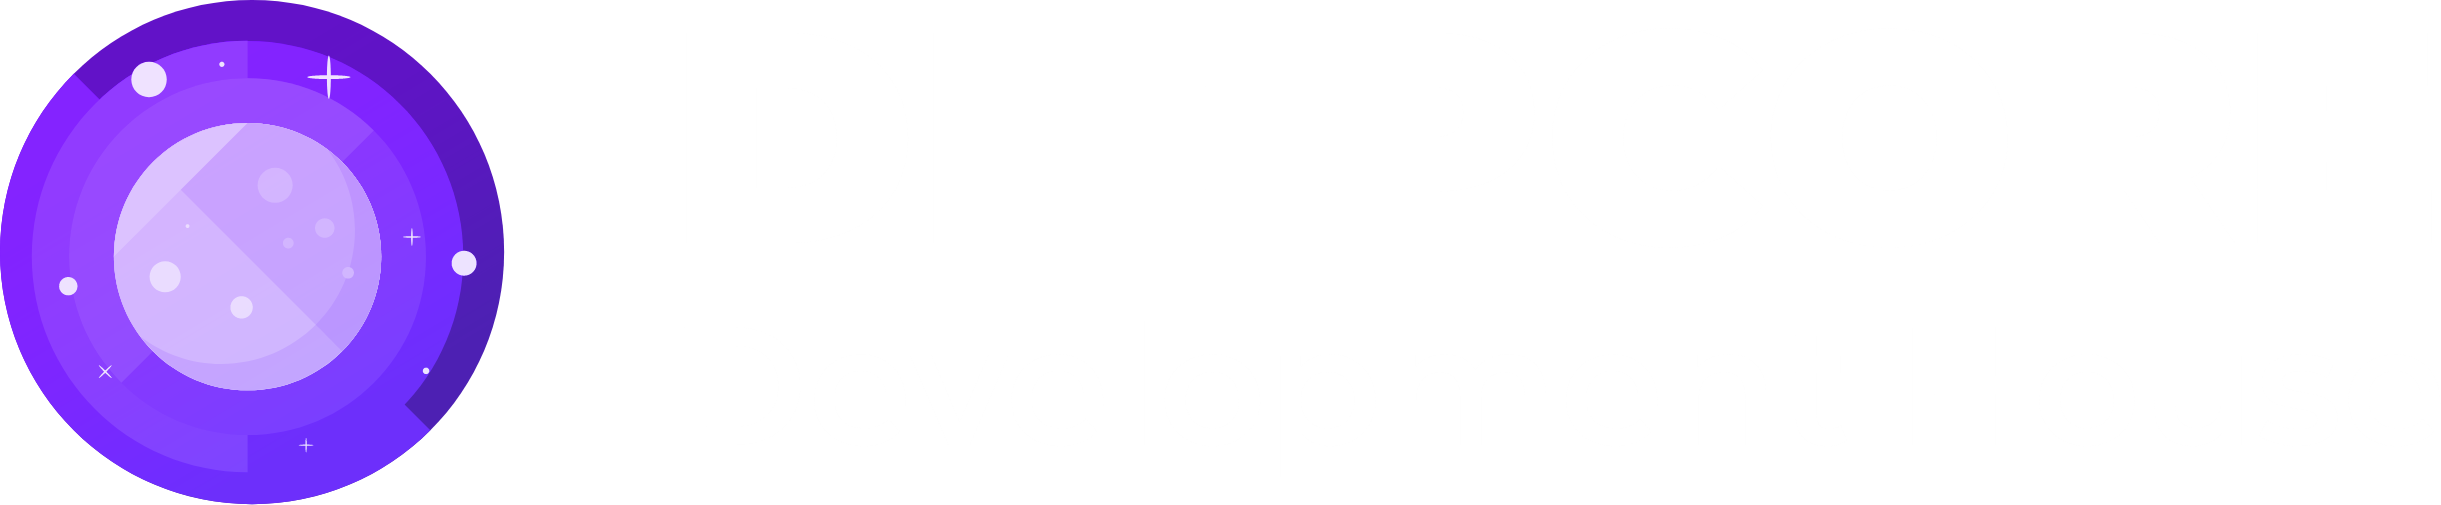 Deepcore Development House banner